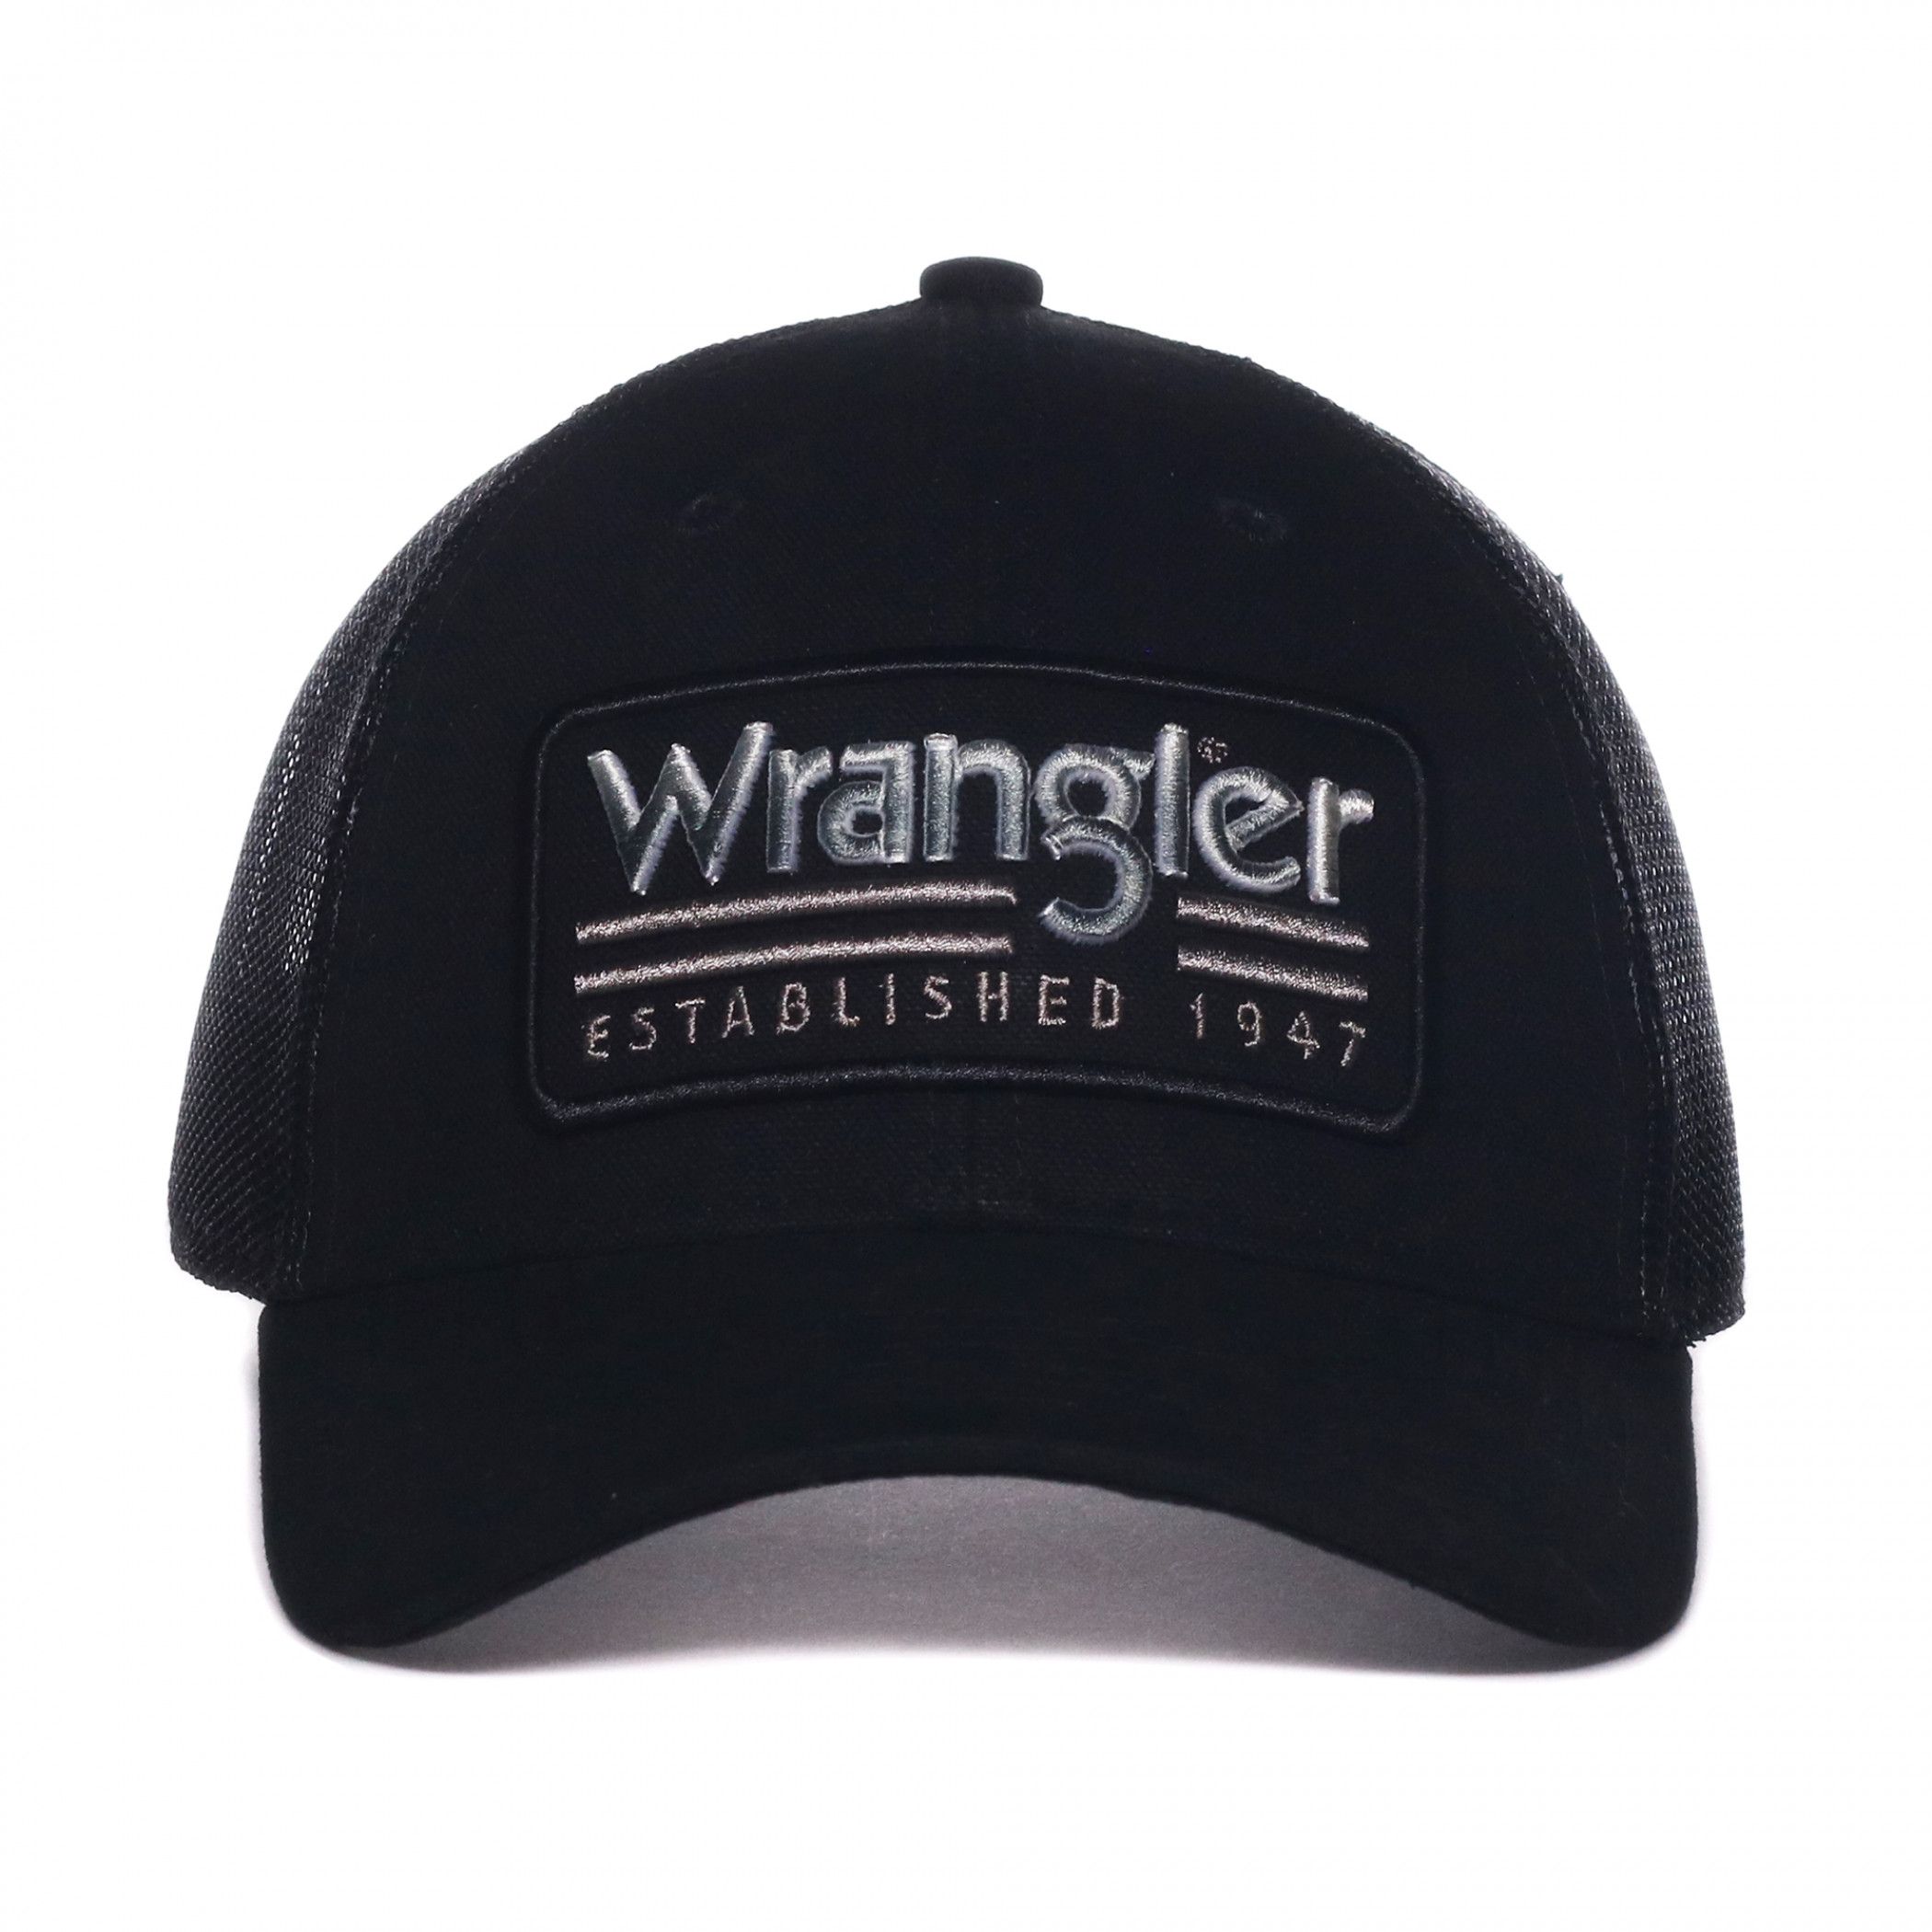 Wrangler Logo Established 1947 Patch Pre-Curved Adjustable Trucker Hat